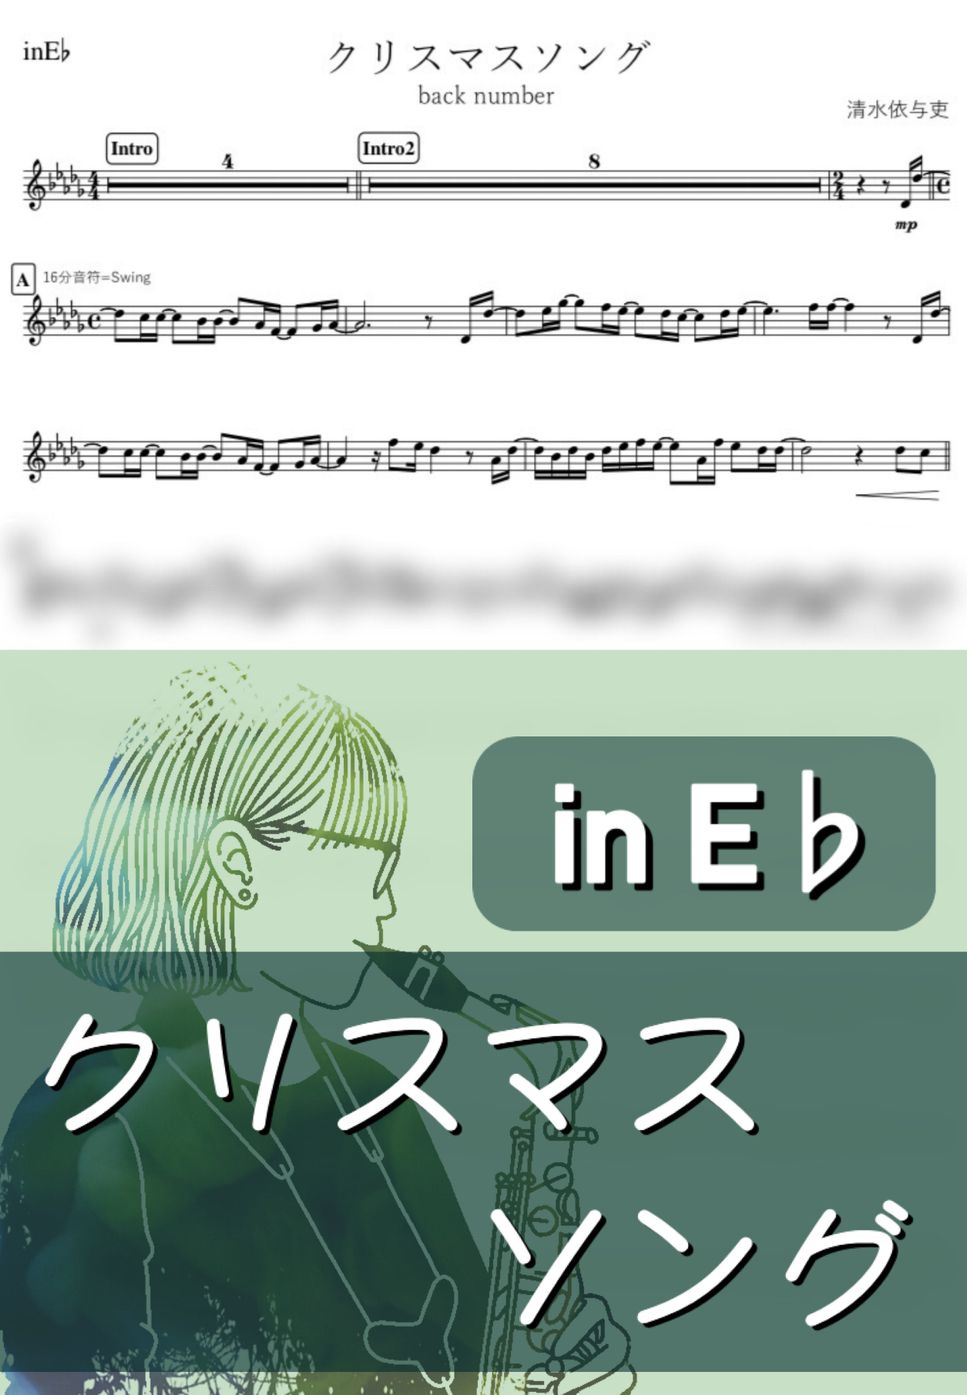 back number - クリスマスソング (E♭) by kanamusic